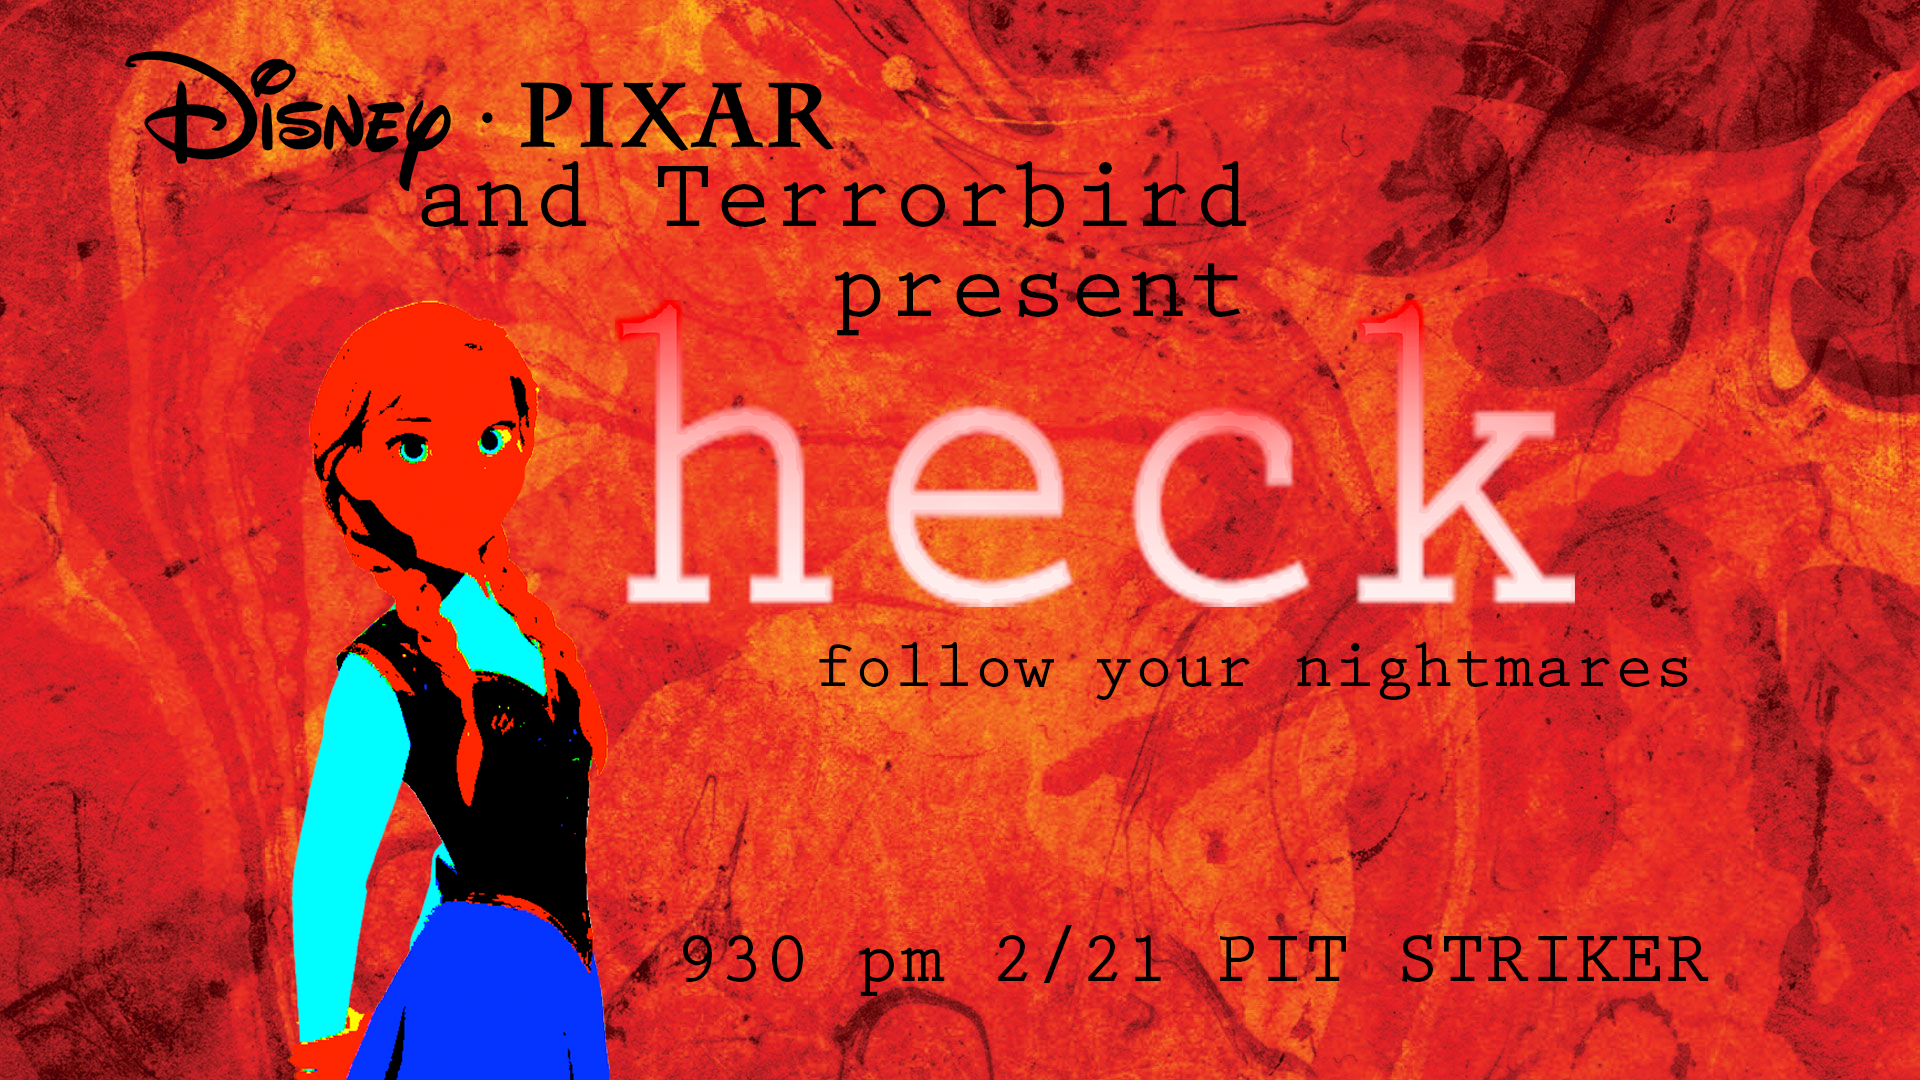 Terrorbird: "Heck—Follow Your Nightmares"